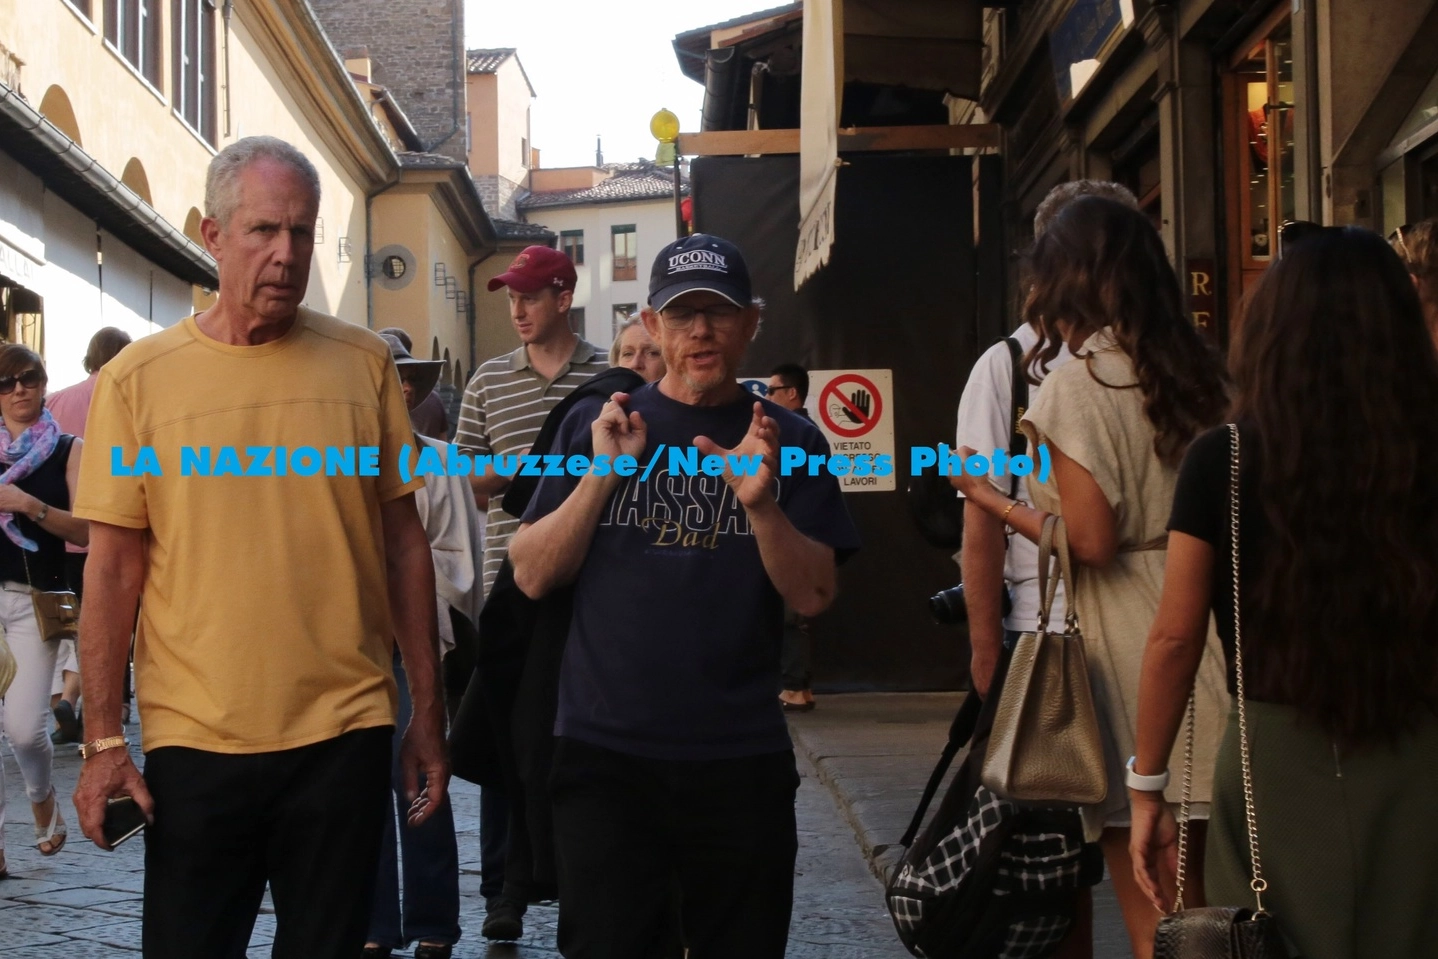 Ron Howard a passeggio nel centro storico di Firenze (Edoardo Abruzzese / New Press Photo)